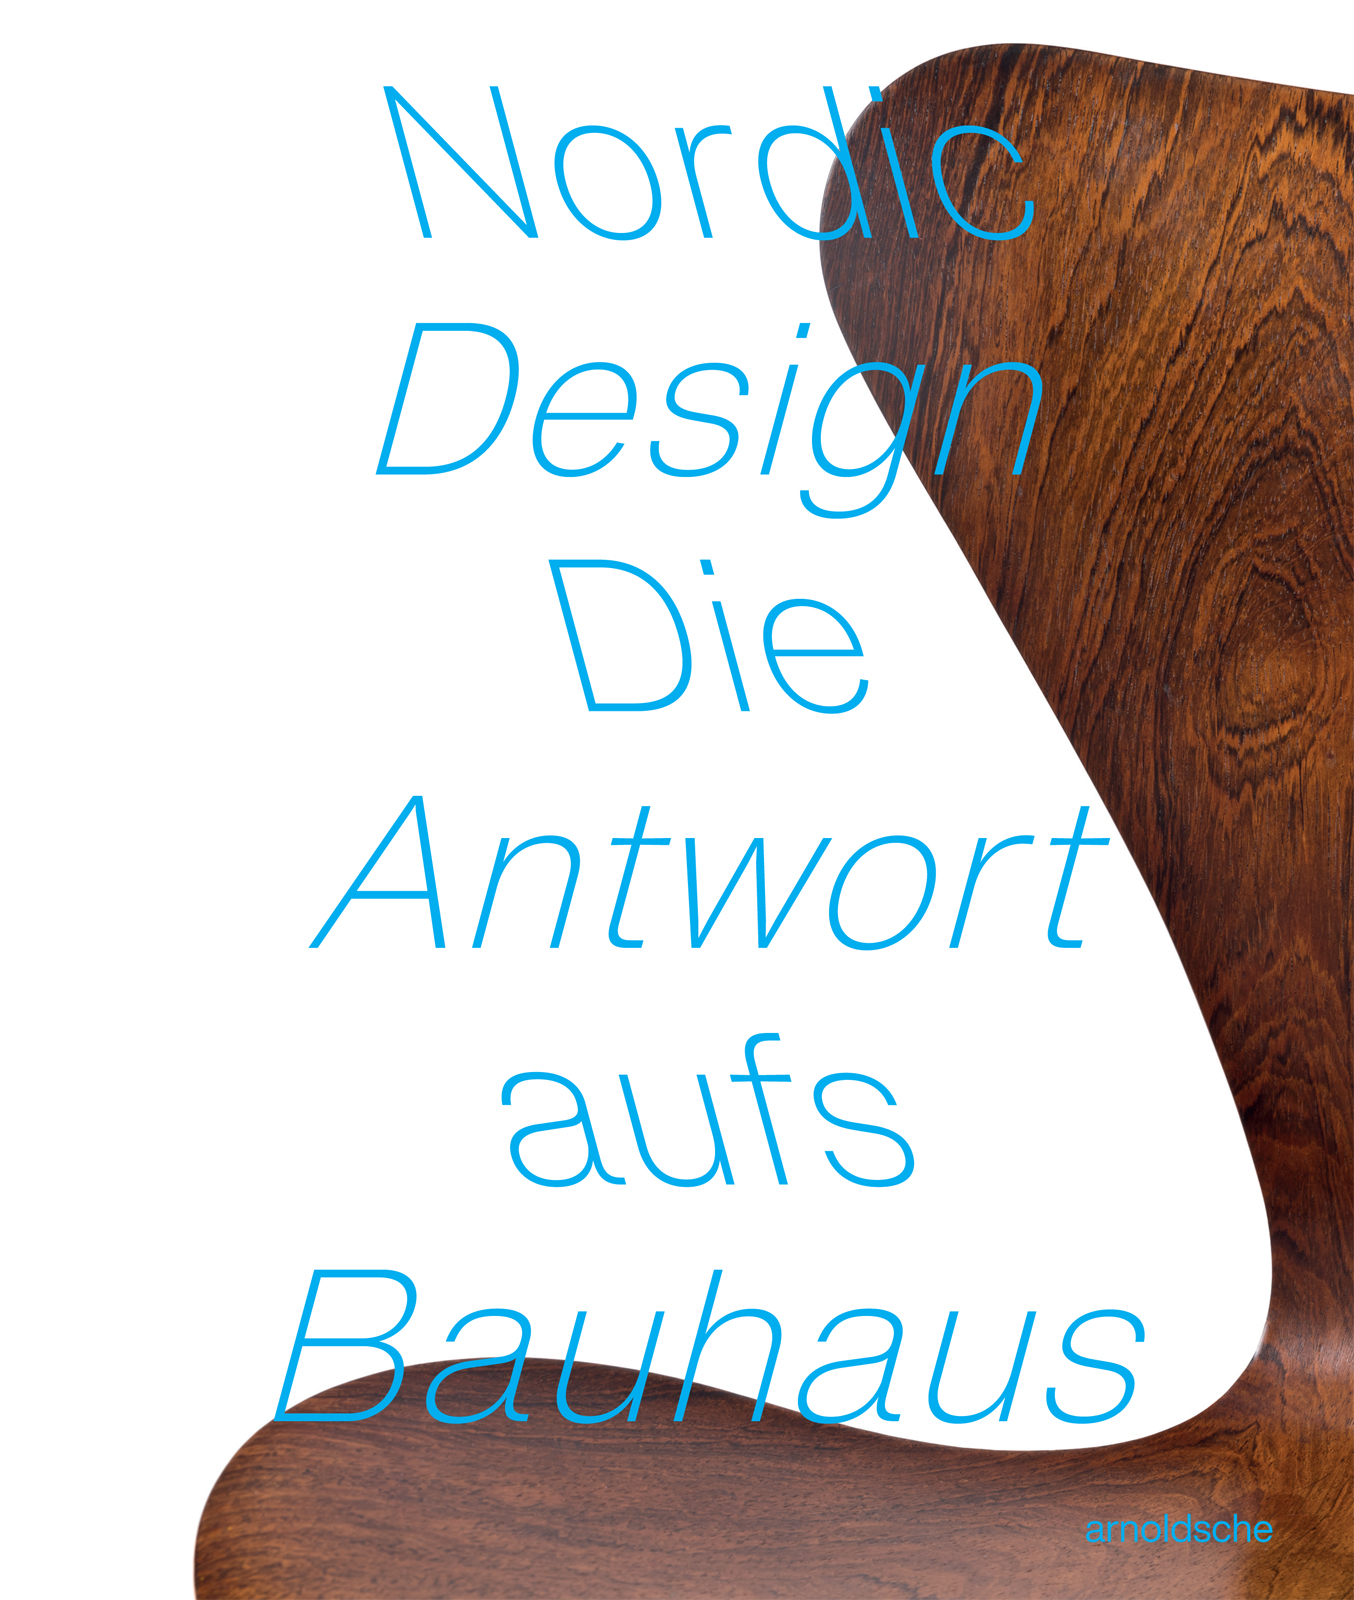 NORDIC DESIGN | Die Antwort aufs Bauhaus